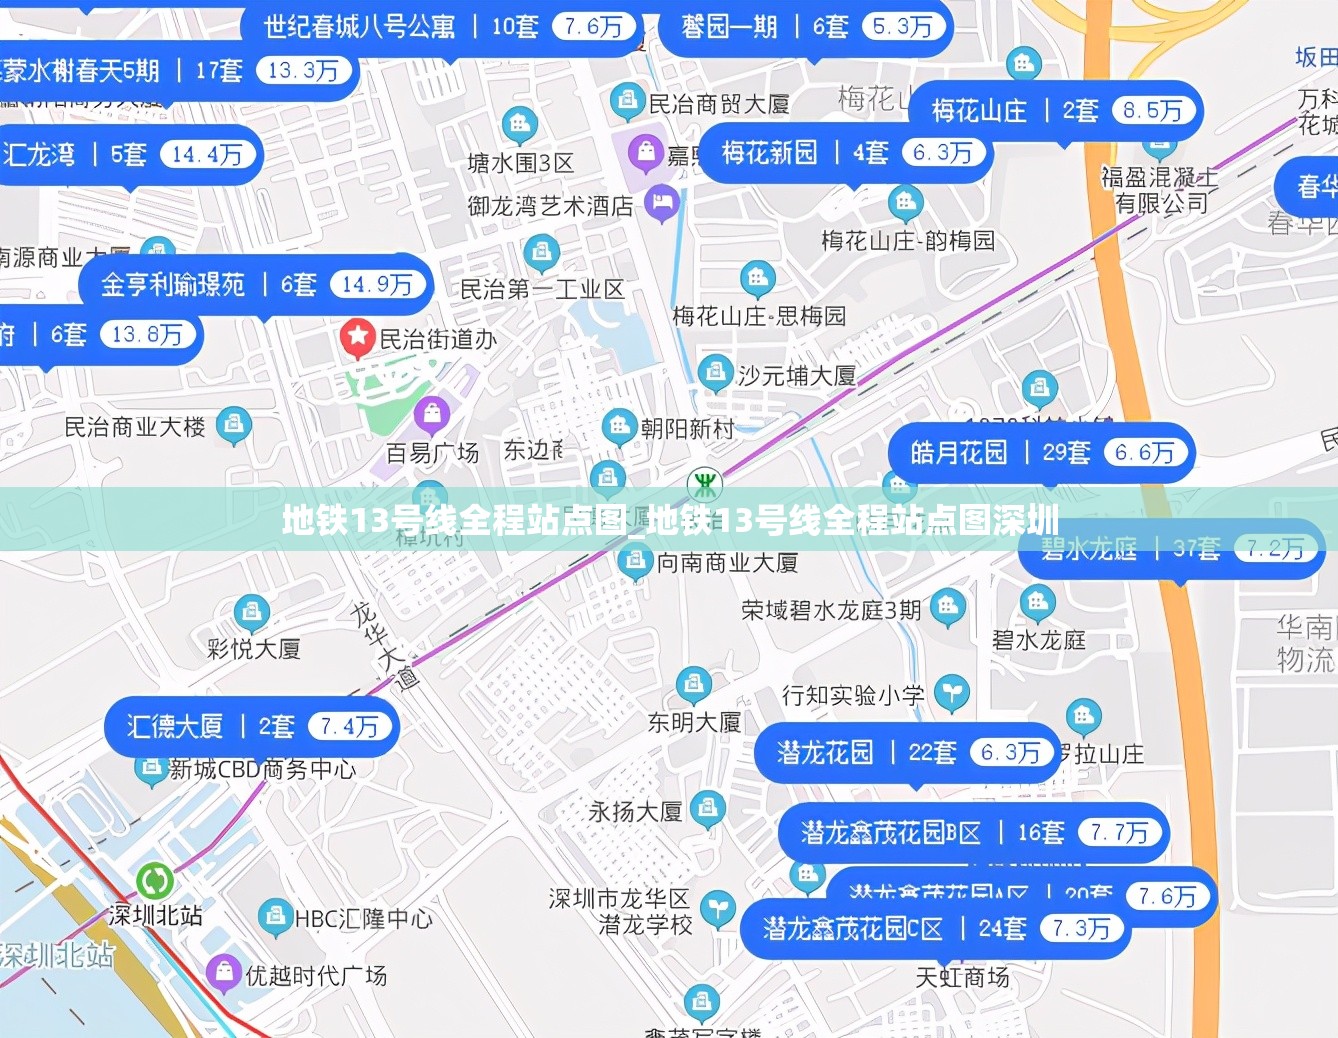 地铁13号线全程站点图_地铁13号线全程站点图深圳